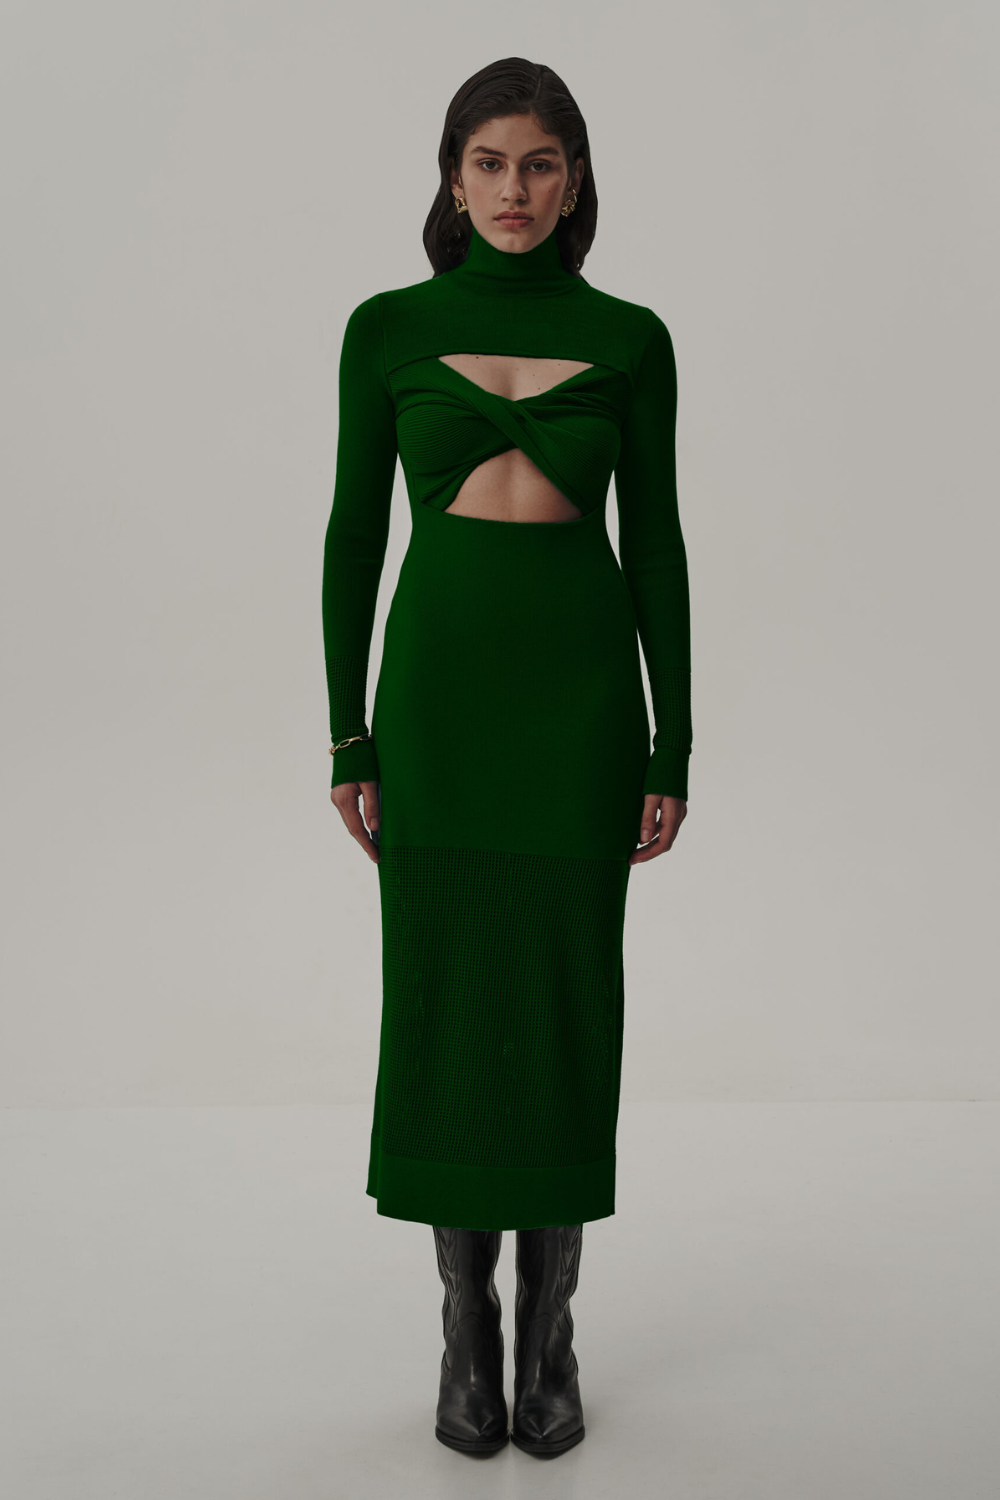 Šaty trikotážní s topem, zelené (T.Mosca) PEV23-01